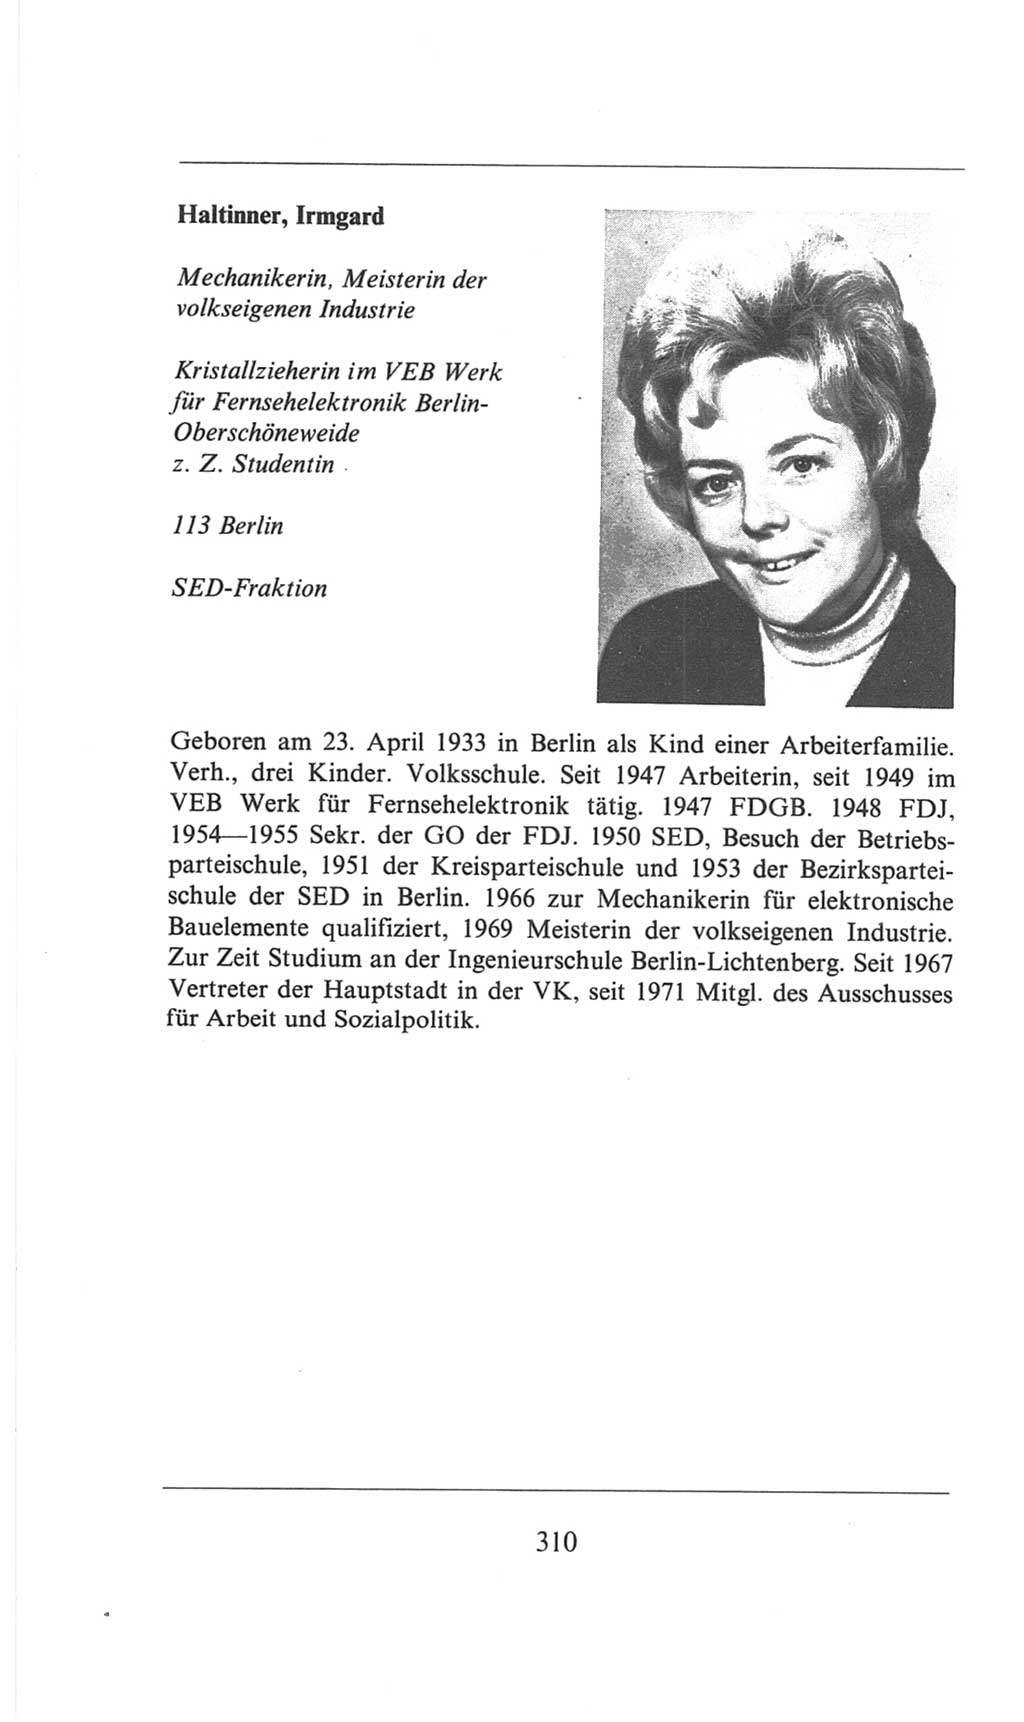 Volkskammer (VK) der Deutschen Demokratischen Republik (DDR), 6. Wahlperiode 1971-1976, Seite 310 (VK. DDR 6. WP. 1971-1976, S. 310)